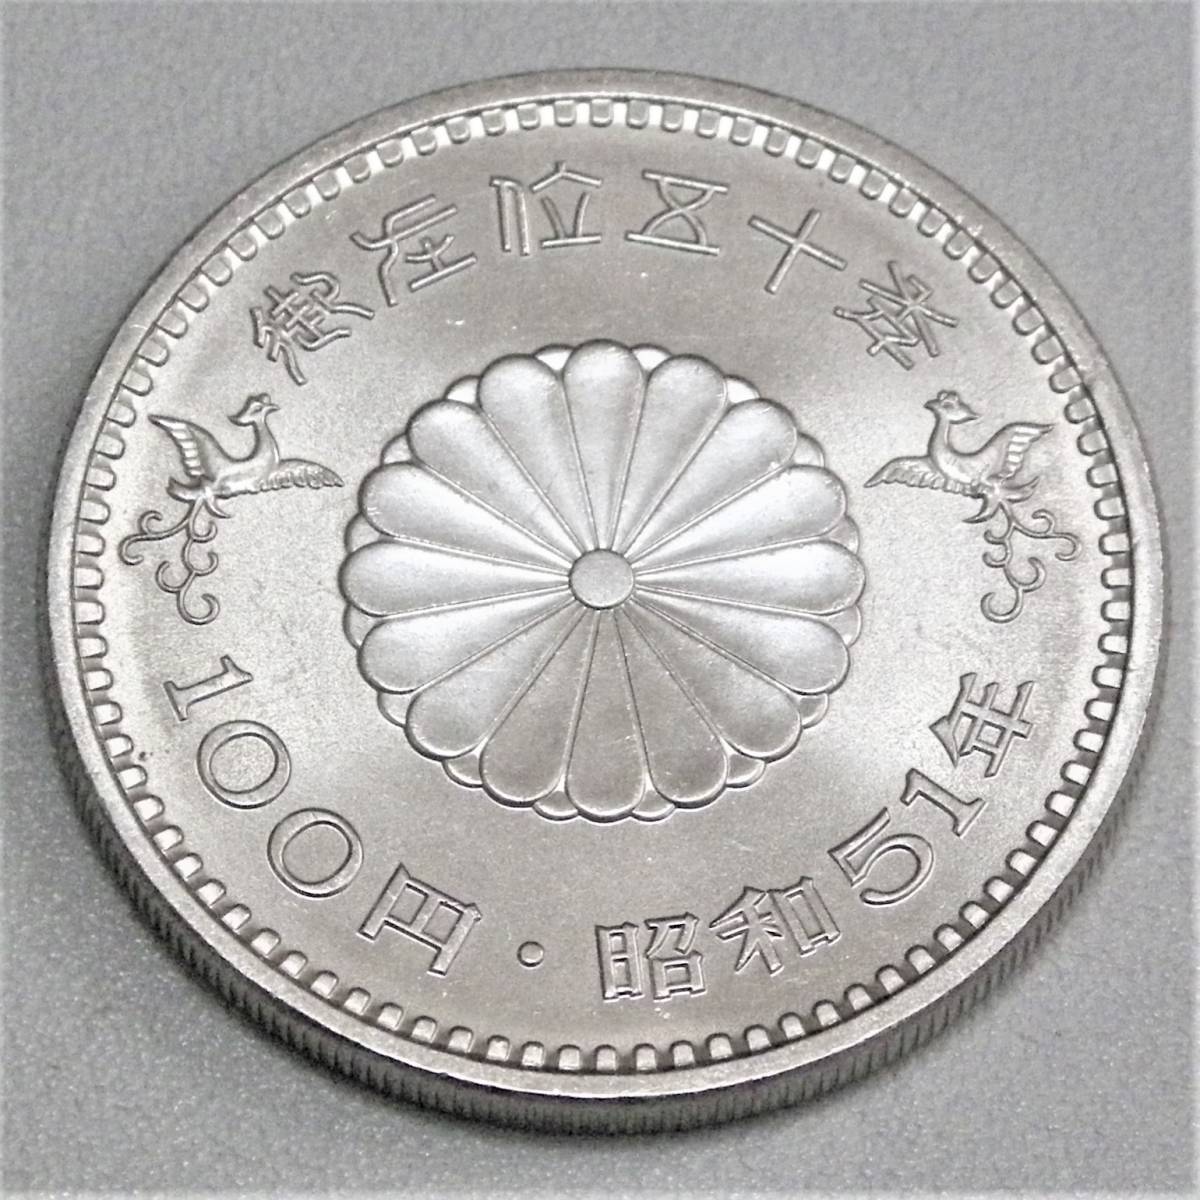 天皇陛下御在位50年記念 100円白銅貨幣 79枚 プルーフ硬貨 旧貨幣/金貨 